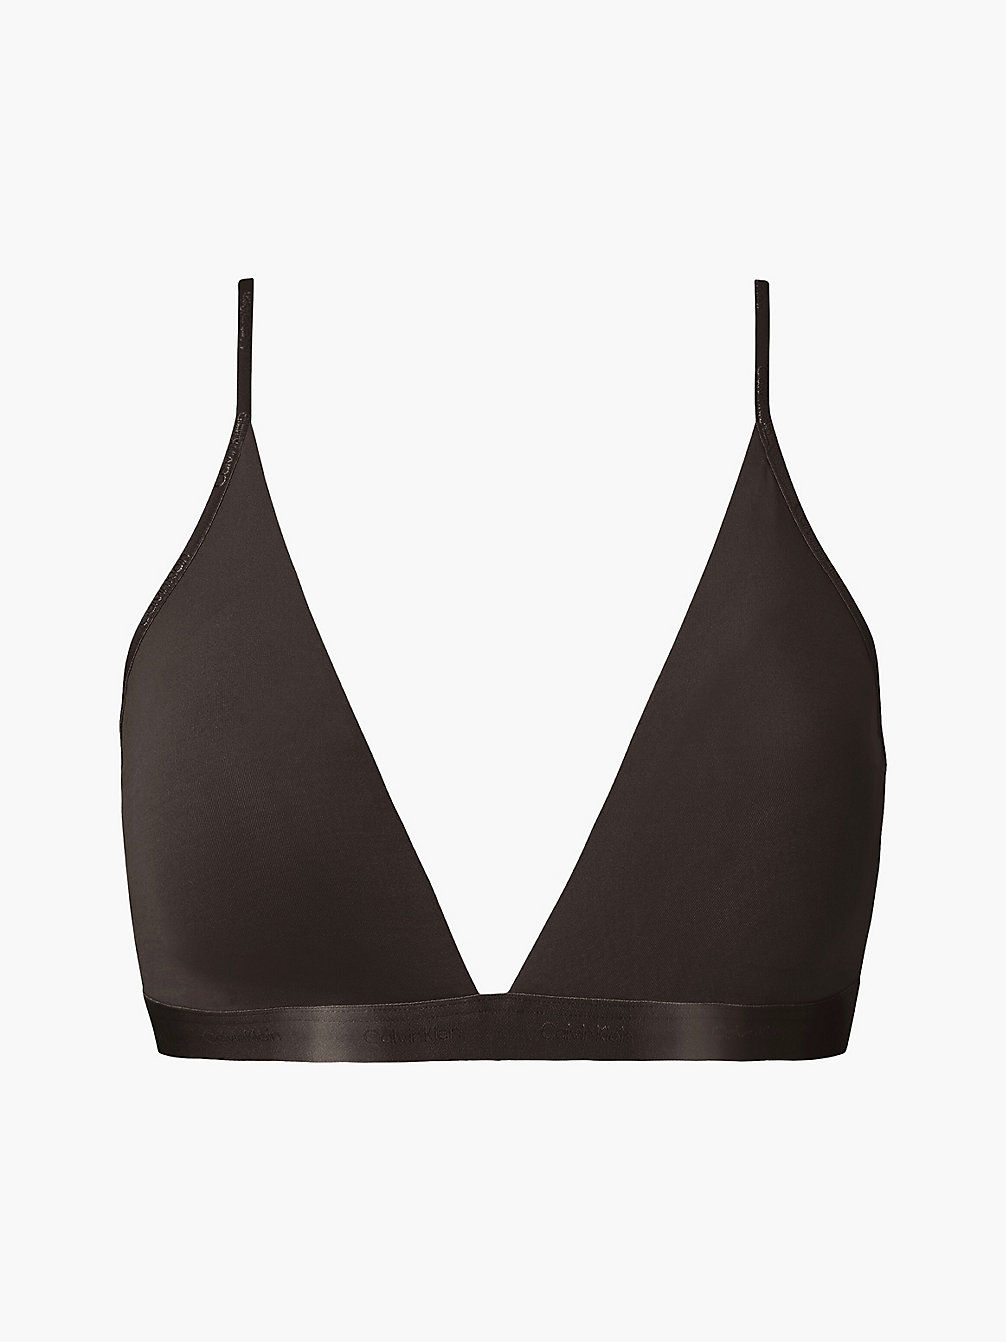 WOODLAND Triangle Bra - Form To Body undefined women Calvin Klein